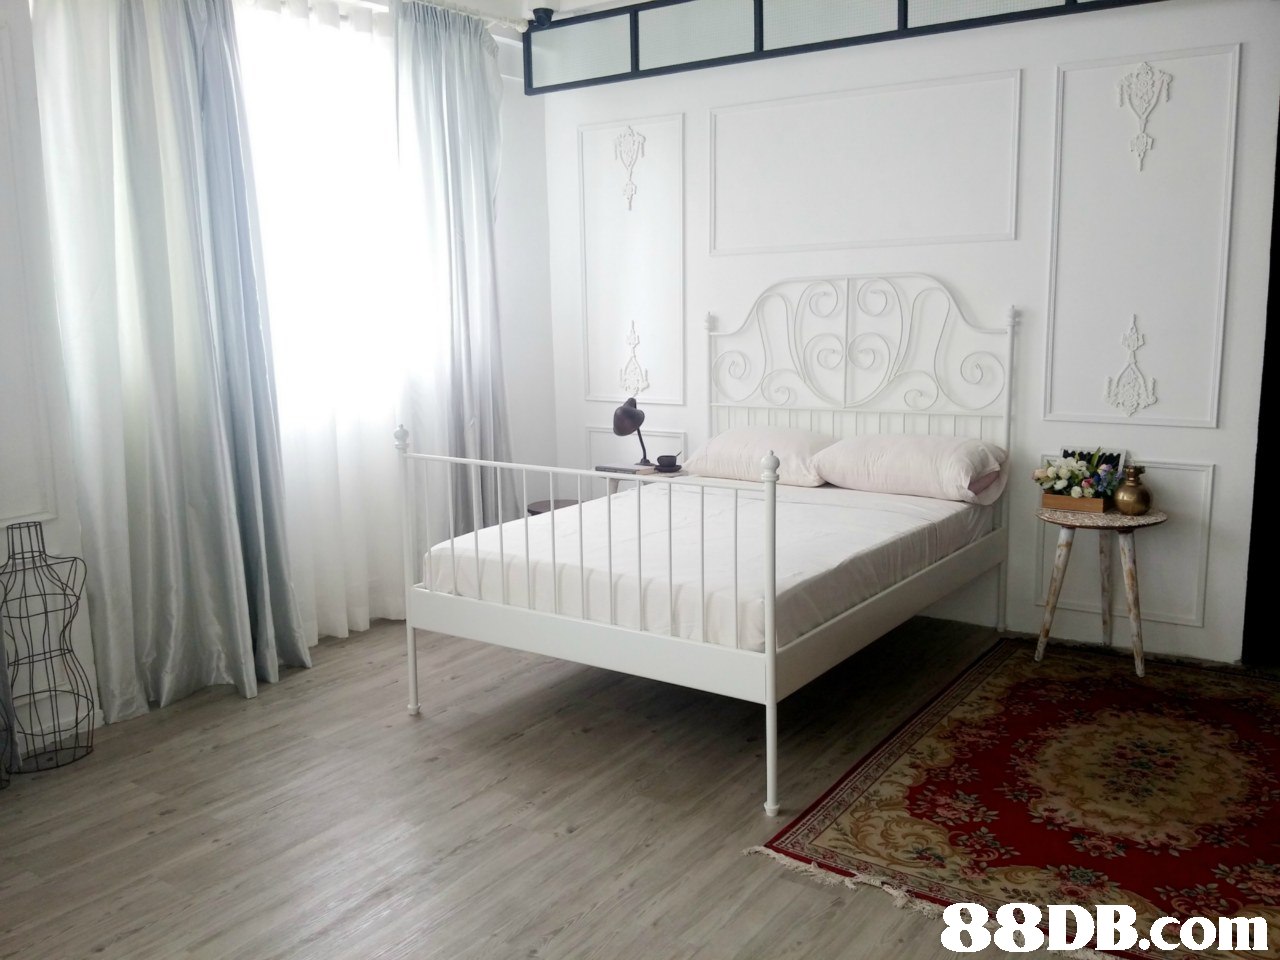 ue 88DB.com  bed frame